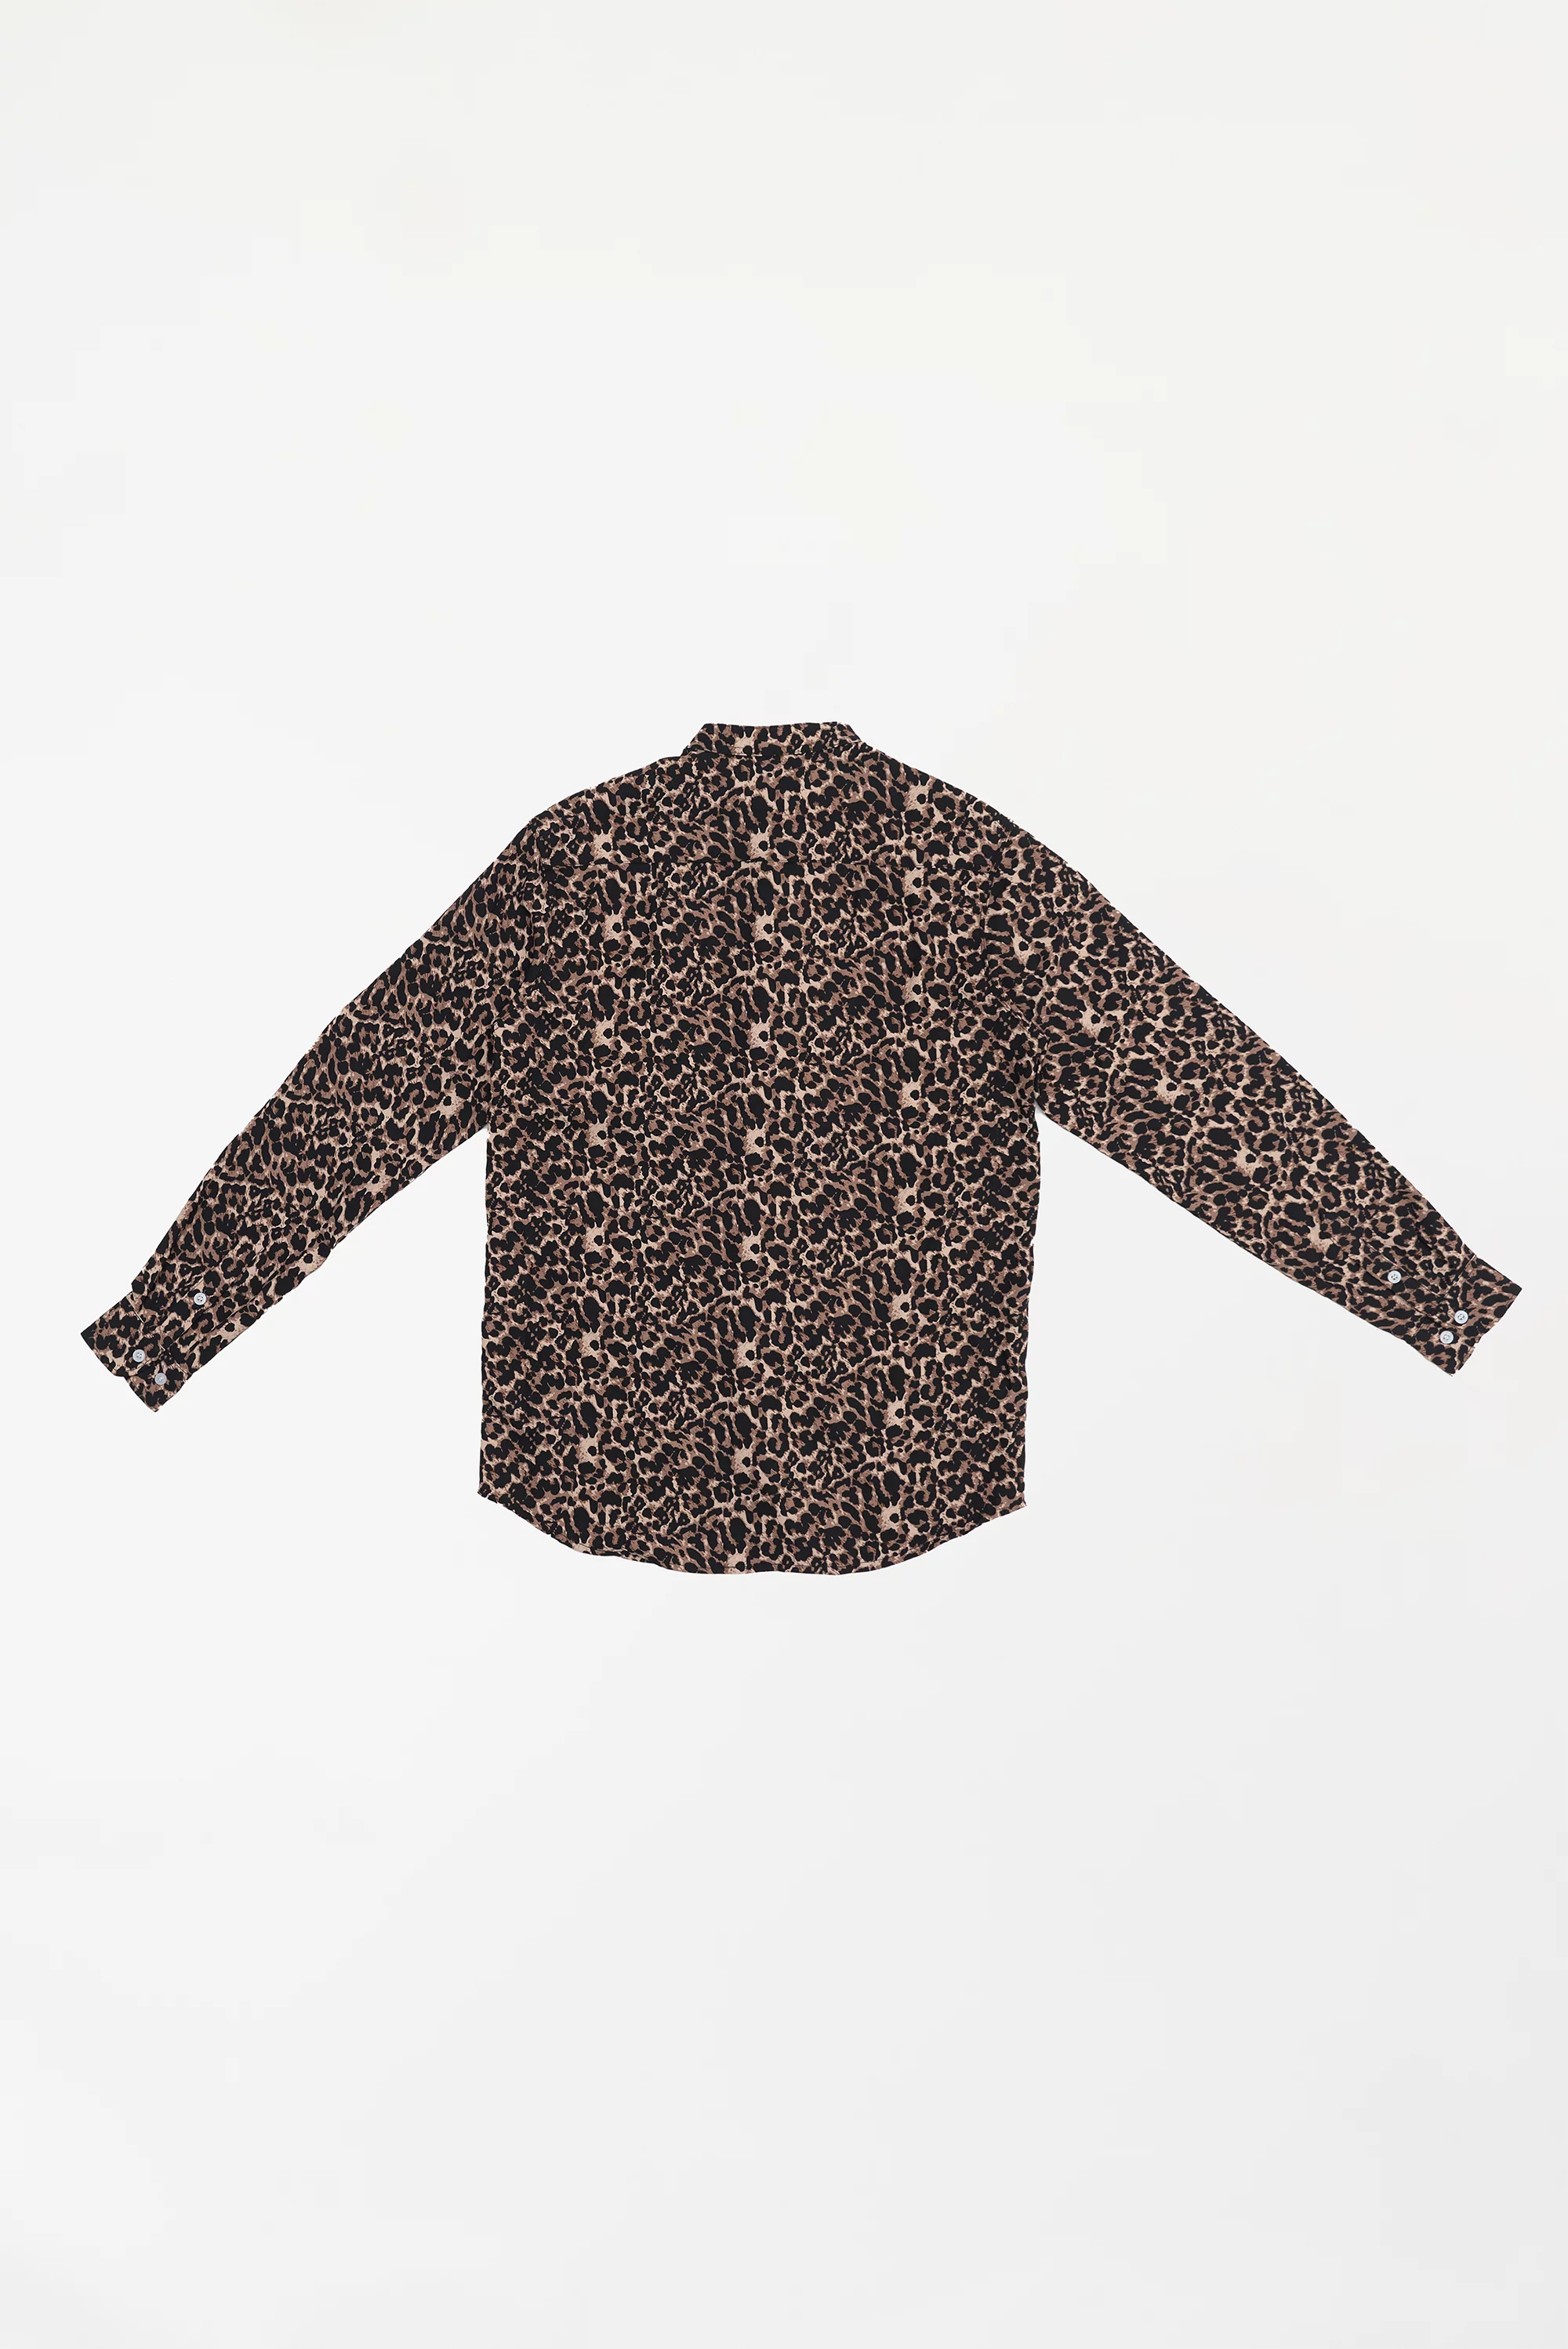 Men's Leopard Print Button-Up Shirt